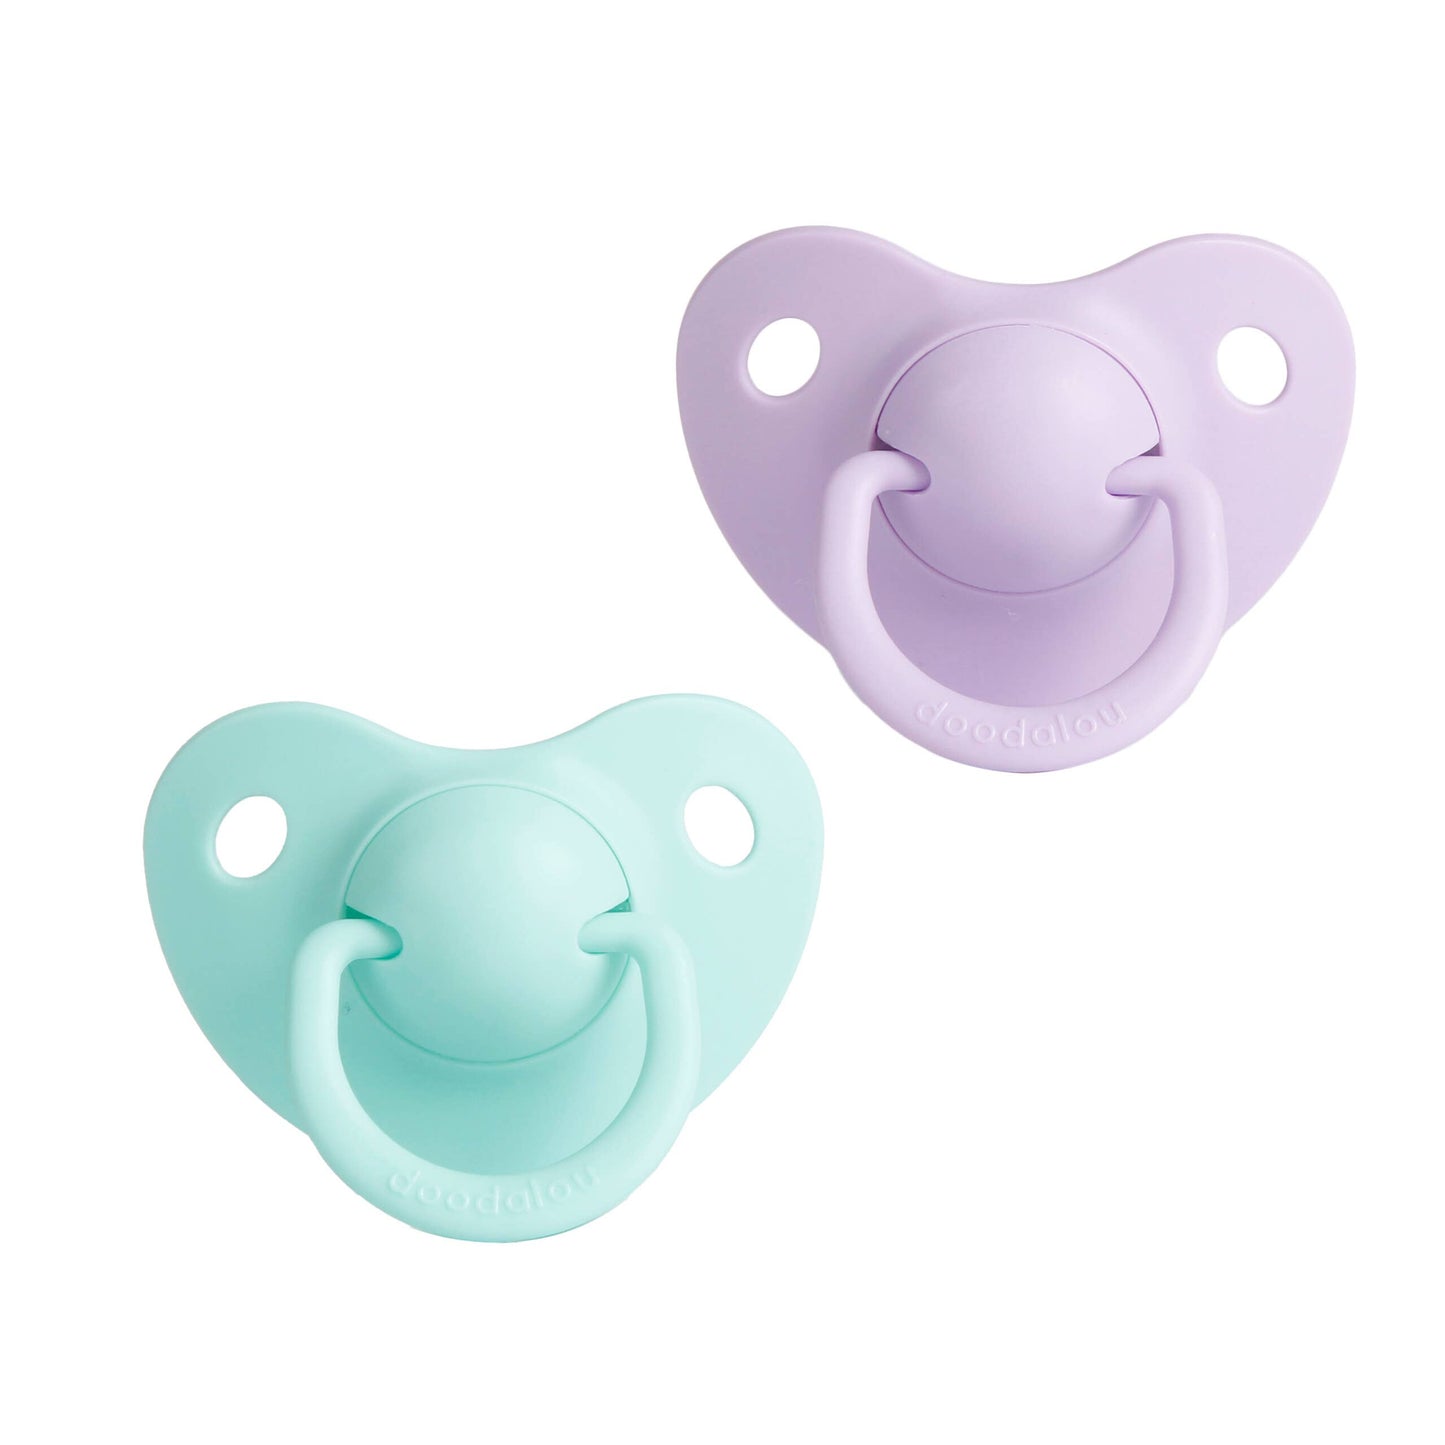 Doodalou Infant Pacifier - Light Purple and Mint